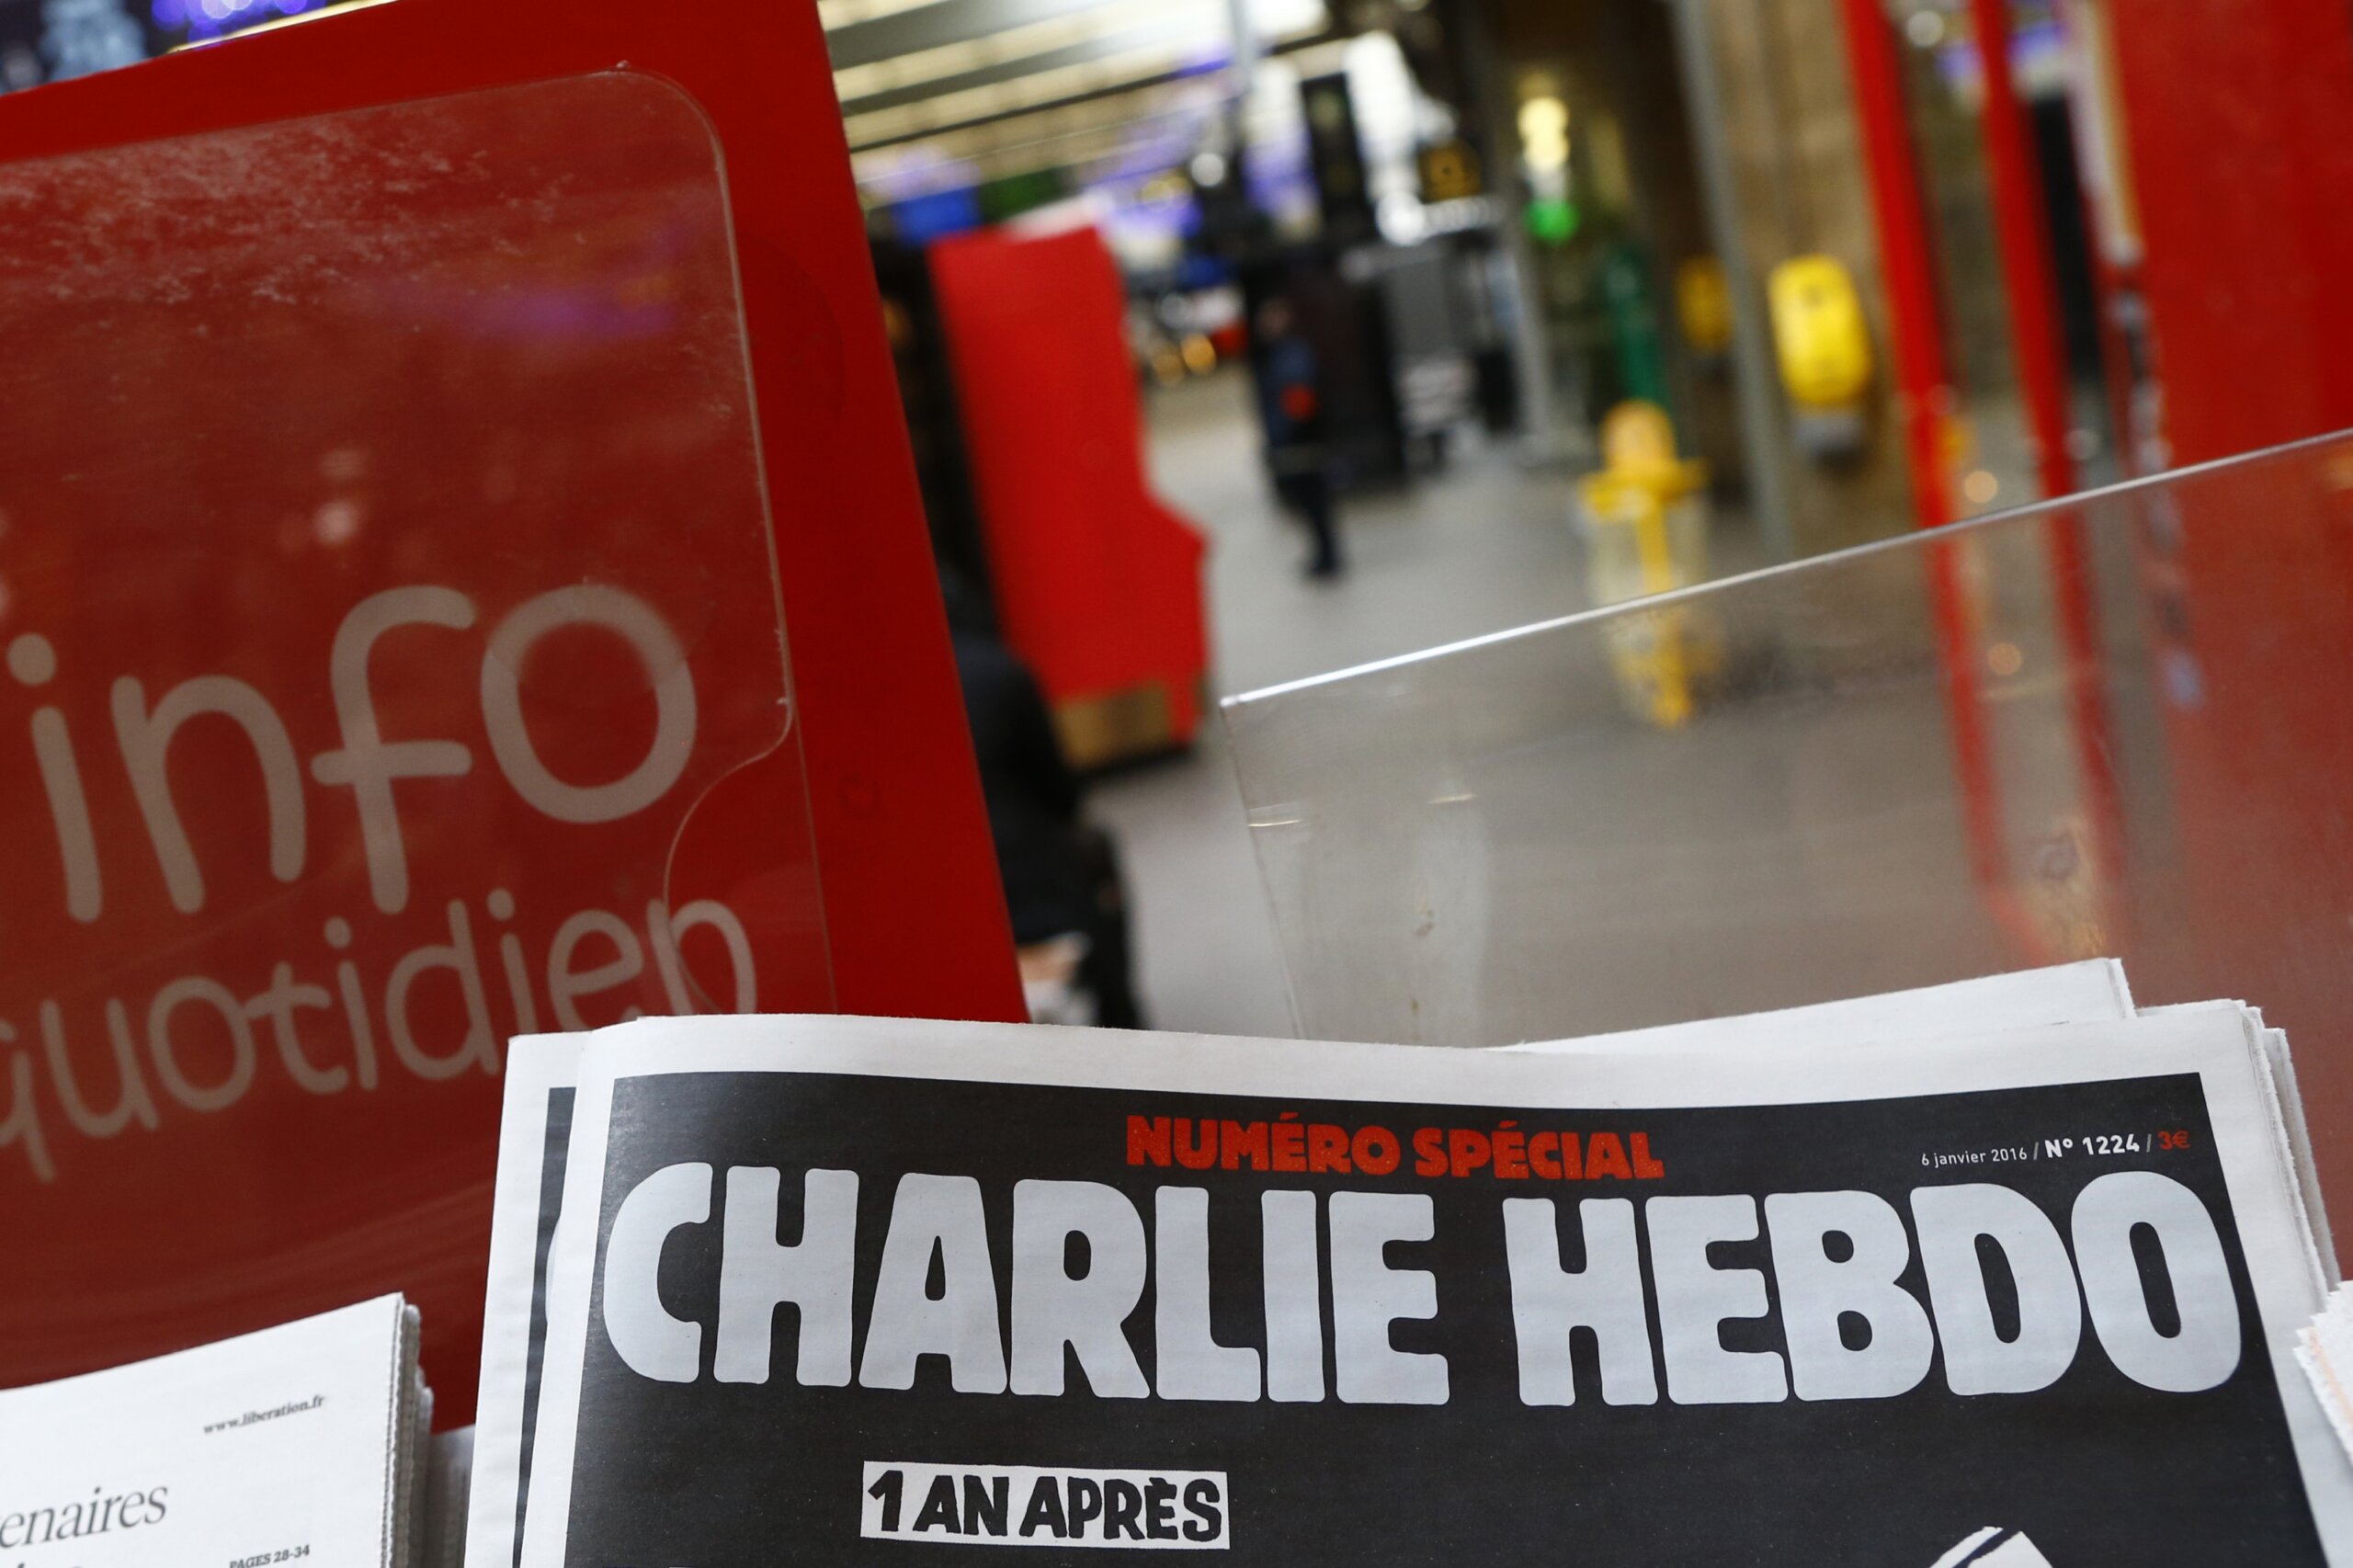 Microsoft: Iran unit behind Charlie Hebdo hack-and-leak op